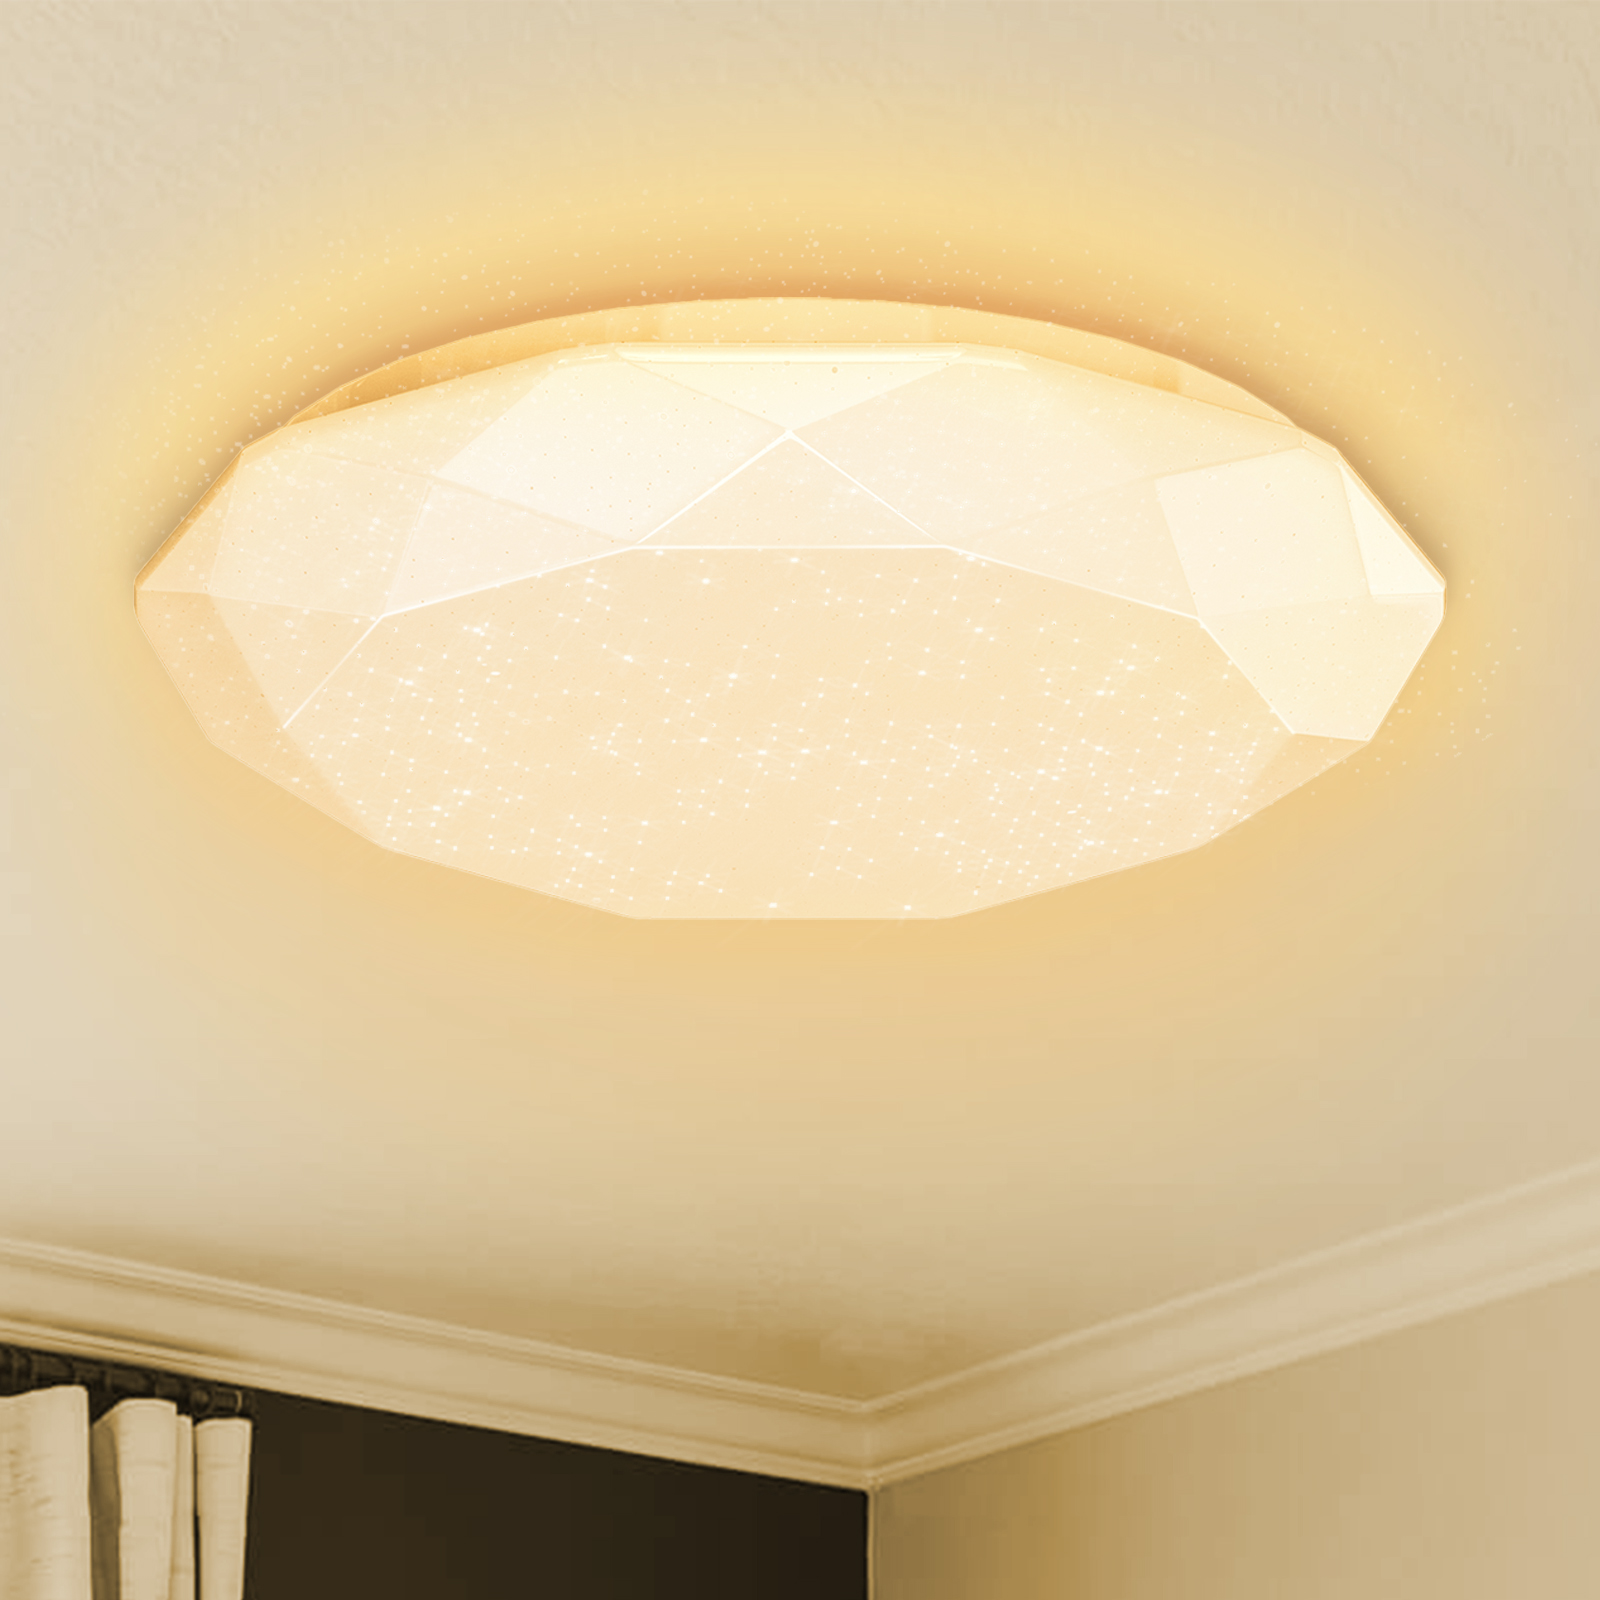 Aigostar Plafoniera LED soffitto da 20W, 1400LM. Luce calda 3000K, alta luminosità, plafoniera a LED, decoro a stelle, perfetta per soggiorni, camere da letto, cucine, balconi o corridoi